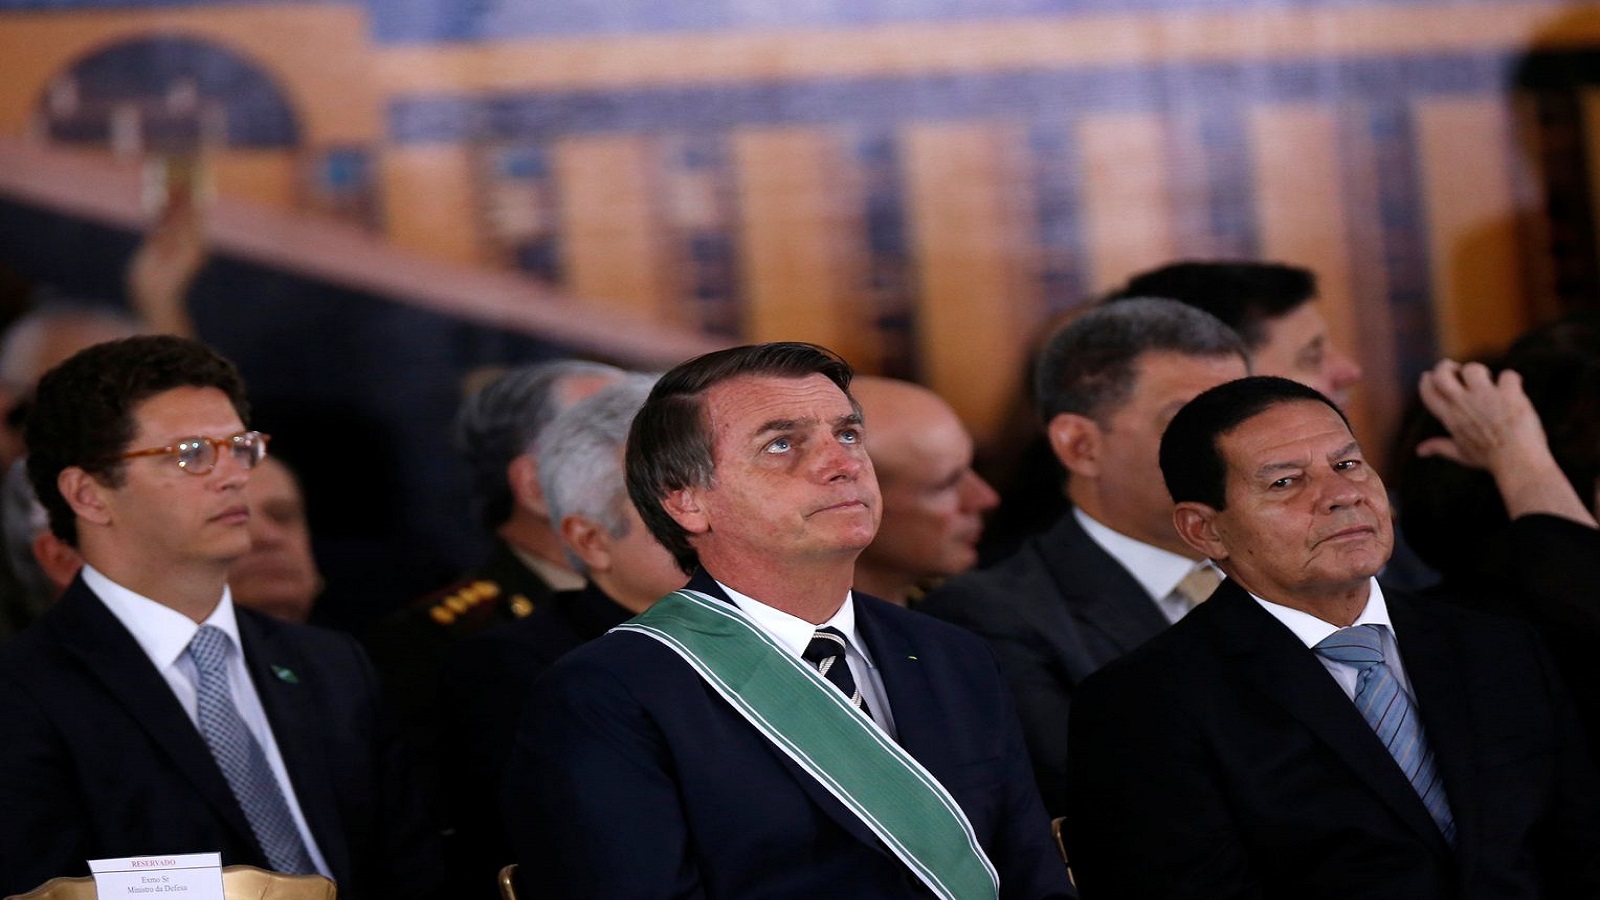 يحتقر الفقراء والنساء والمثليين. خاير بولسونارو يؤدي اليمين كرئيس للبرازيل في كانون الثاني 2019